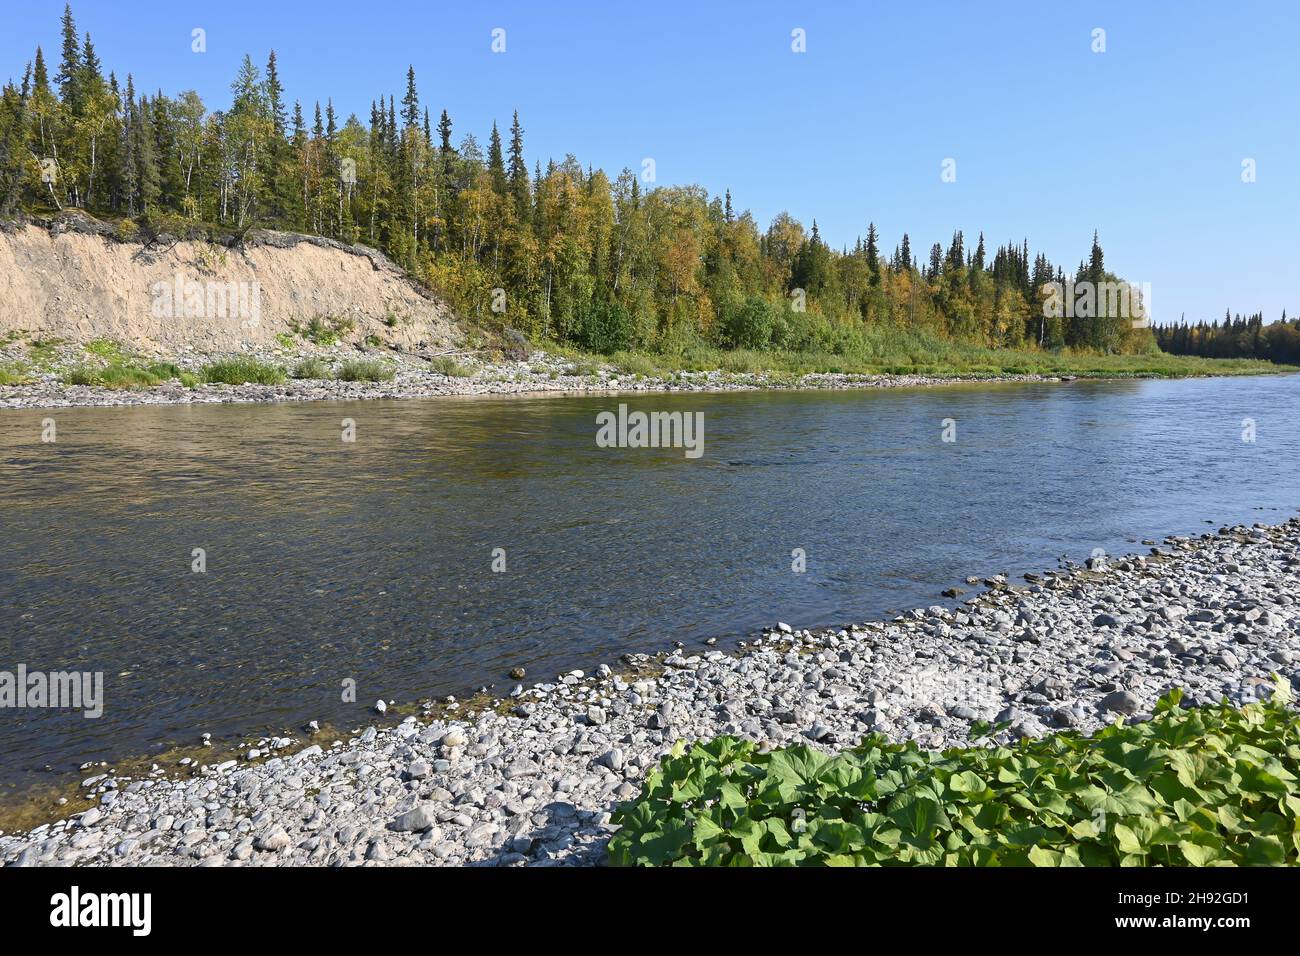 Paesaggio fluviale estivo. Il fiume Taiga settentrionale nella Repubblica di Komi, Russia. Foto Stock